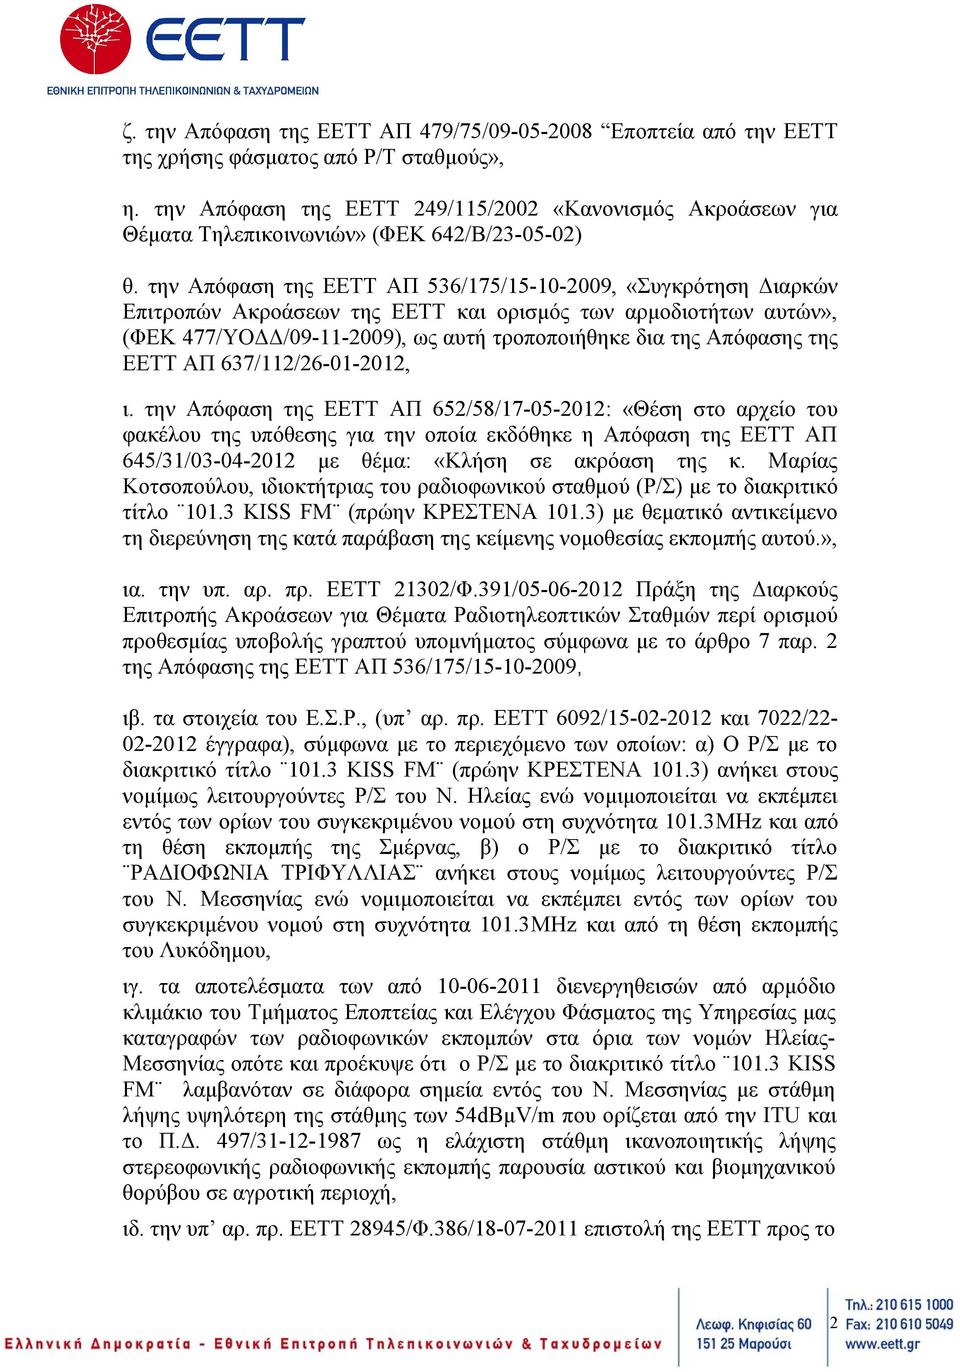 την Απόφαση της ΕΕΤΤ ΑΠ 536/175/15-10-2009, «Συγκρότηση Διαρκών Επιτροπών Ακροάσεων της ΕΕΤΤ και ορισμός των αρμοδιοτήτων αυτών», (ΦΕΚ 477/ΥΟΔΔ/09-11-2009), ως αυτή τροποποιήθηκε δια της Απόφασης της